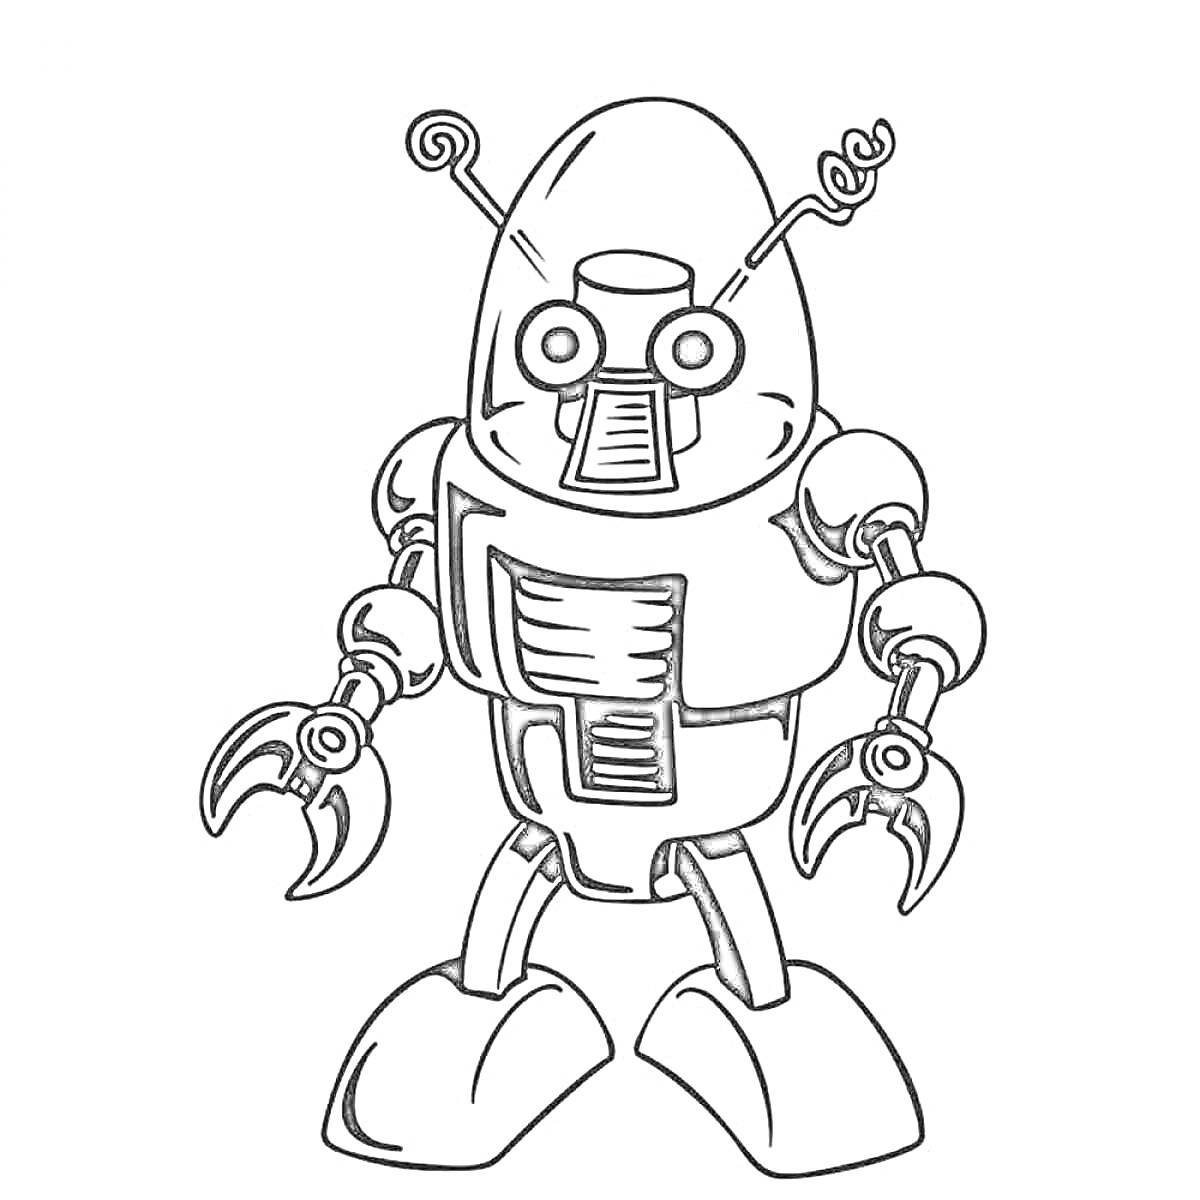 Раскраска Робот с антеннами, гусеницы вместо ног, руки с клешнями